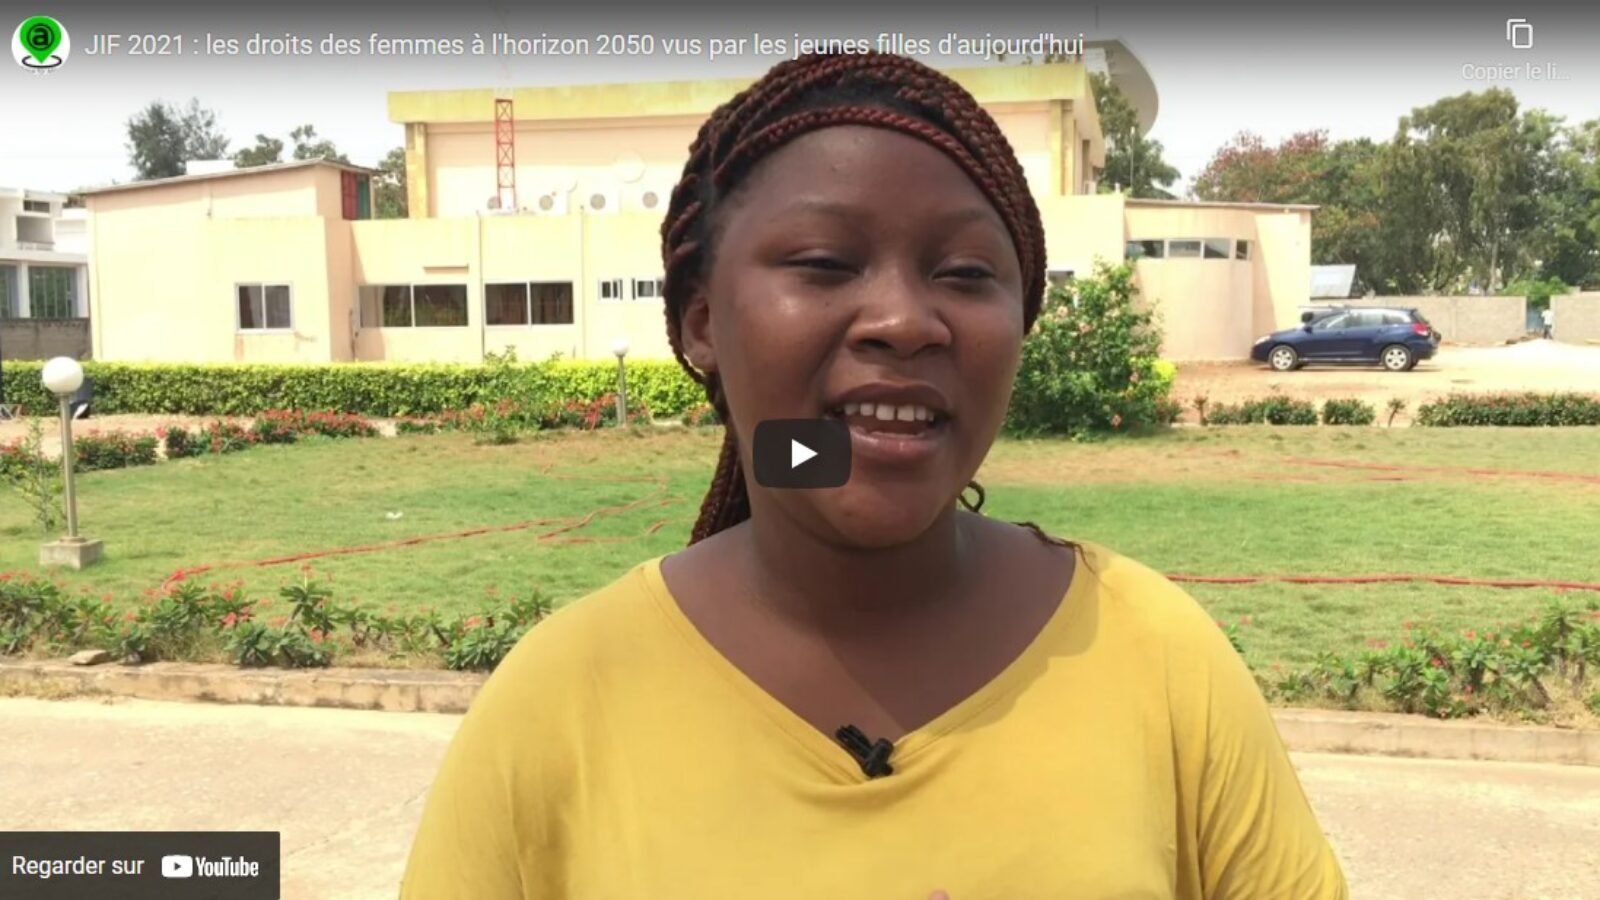 Journée internationale des droits des femmes : de jeunes africaines partagent leur vision du futur